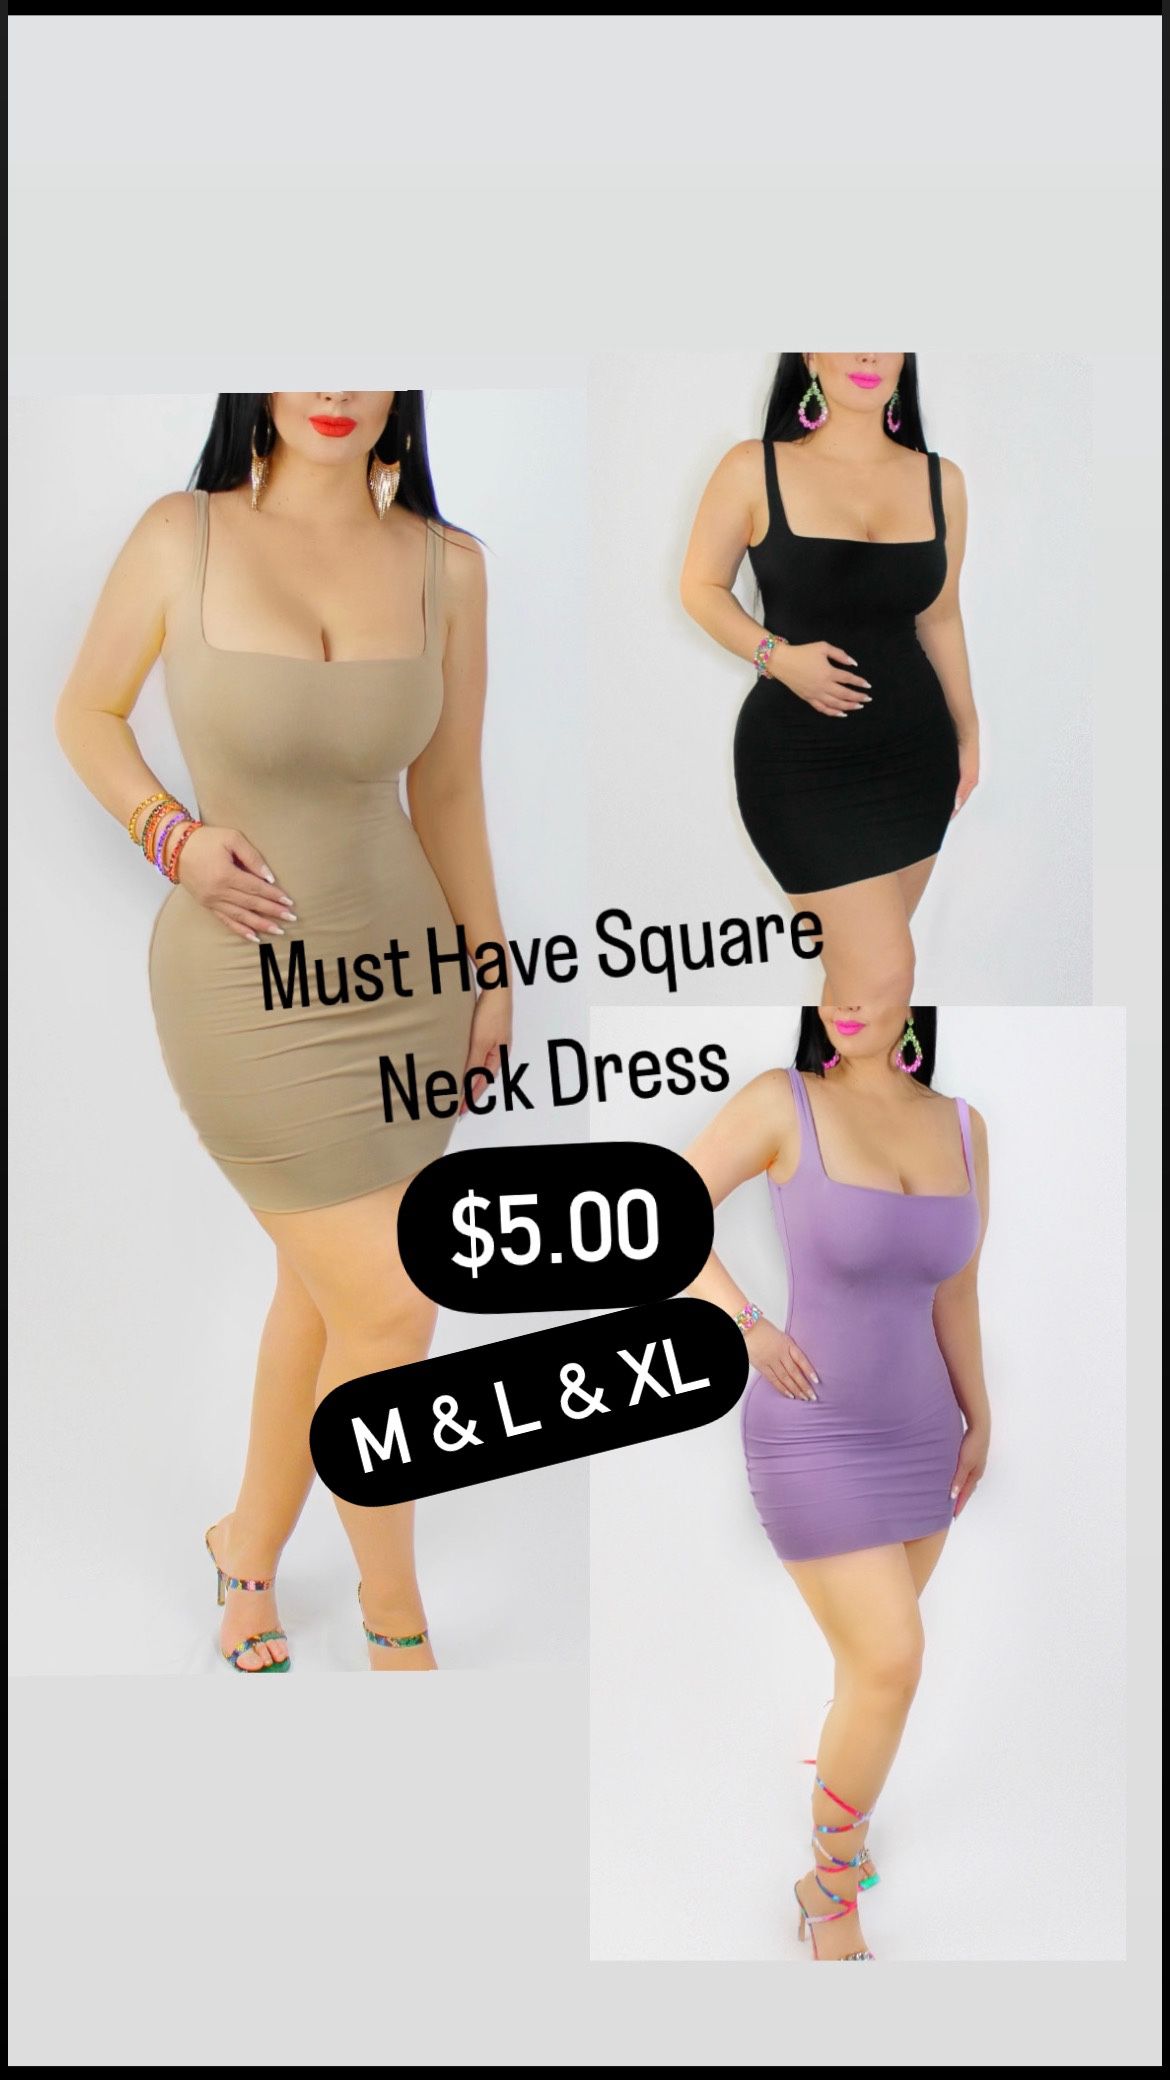 New Square Dress - M, L, & XL